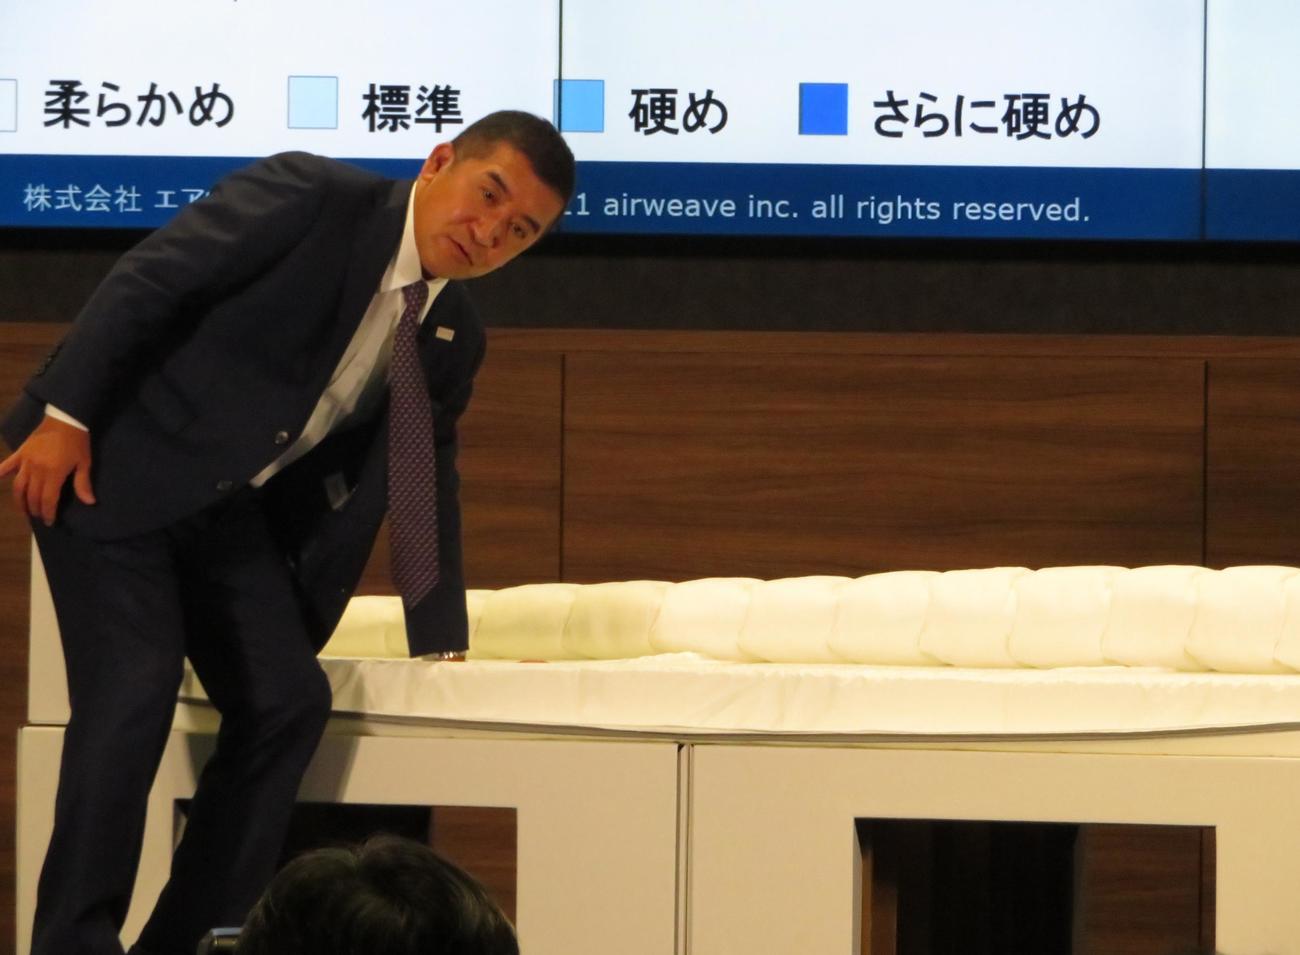 イベントで段ボールベッドの強度を説明する高岡本州会長（撮影・峯岸佑樹）